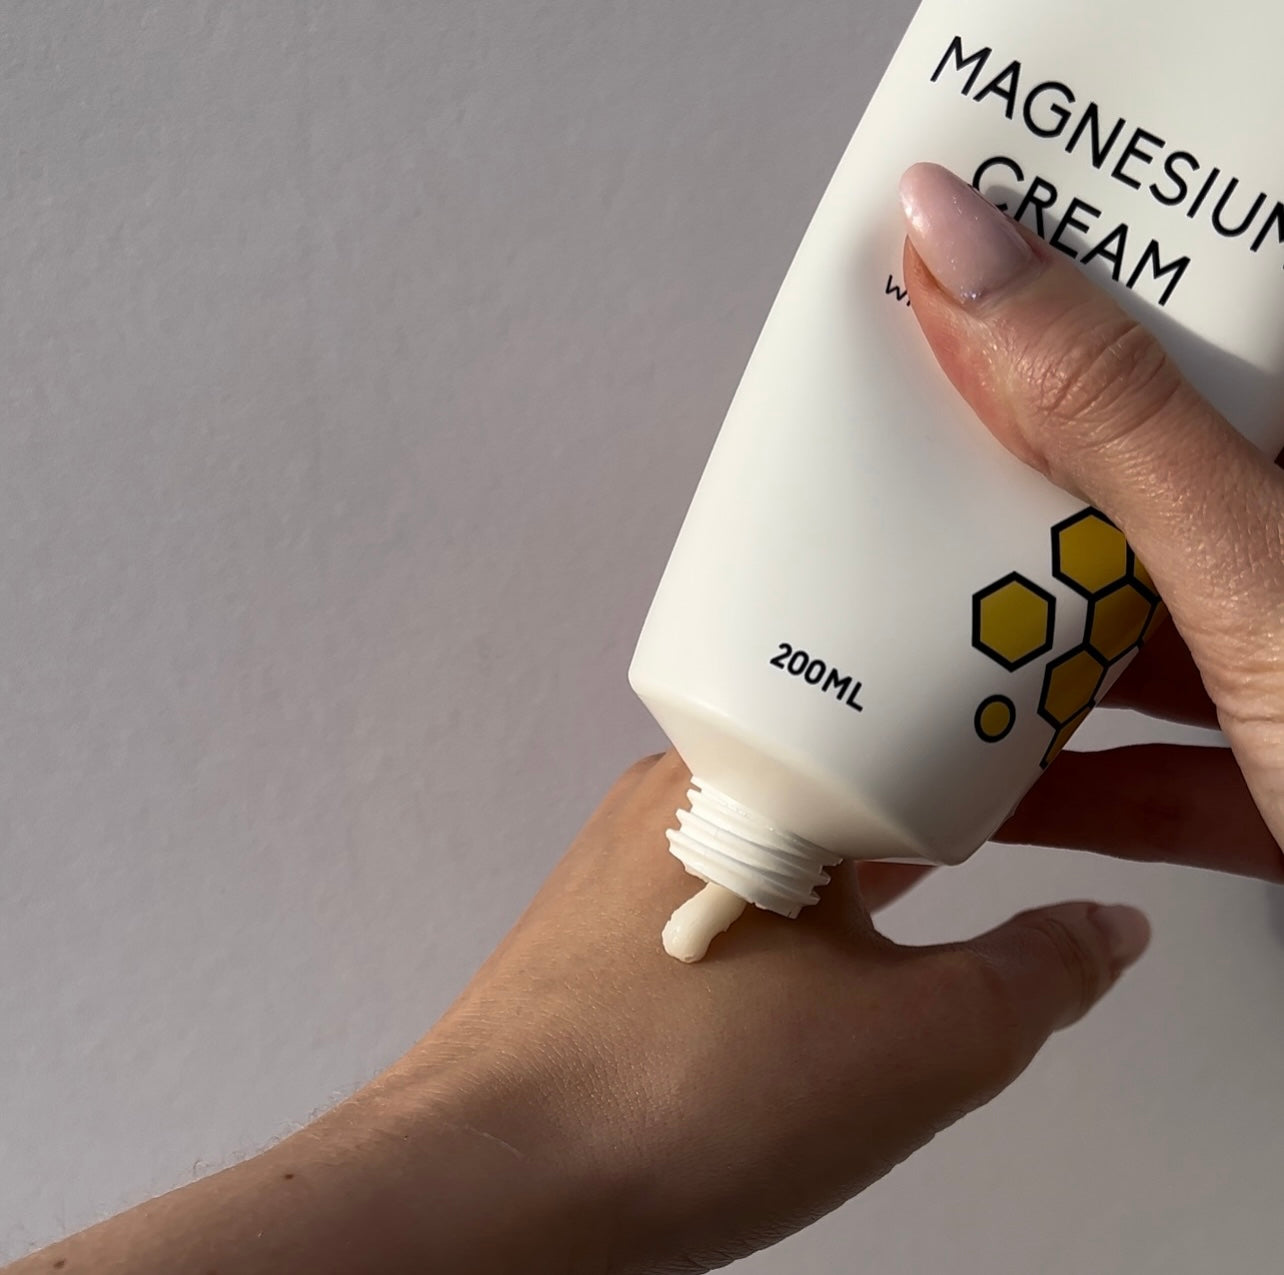 Magnesium Cream & Essential Oils